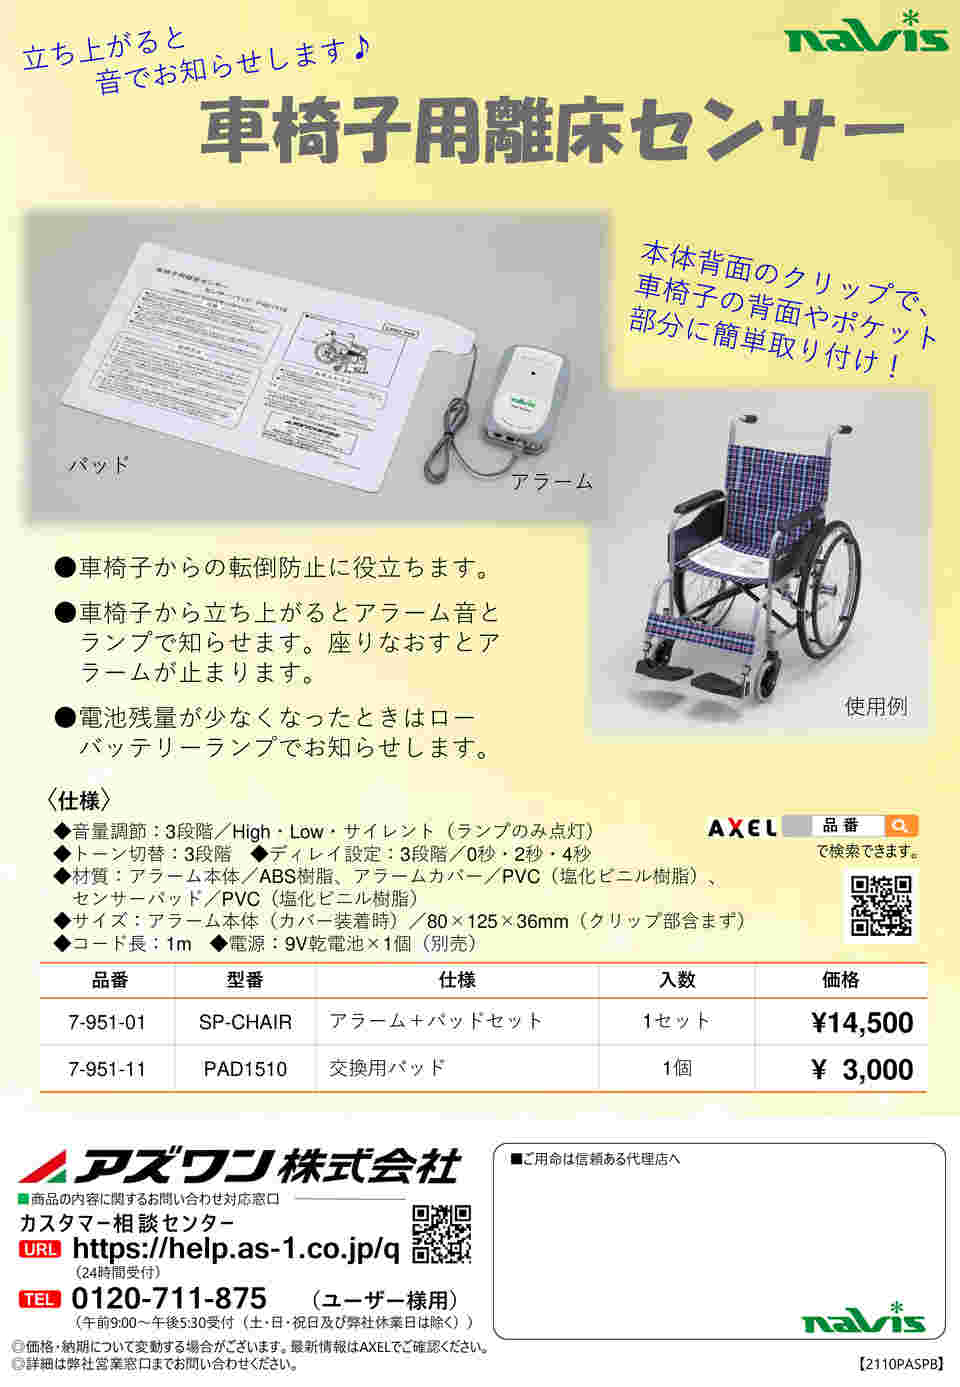 7-951-11 車椅子用離床センサー 交換用パッド PAD1510 【AXEL】 アズワン